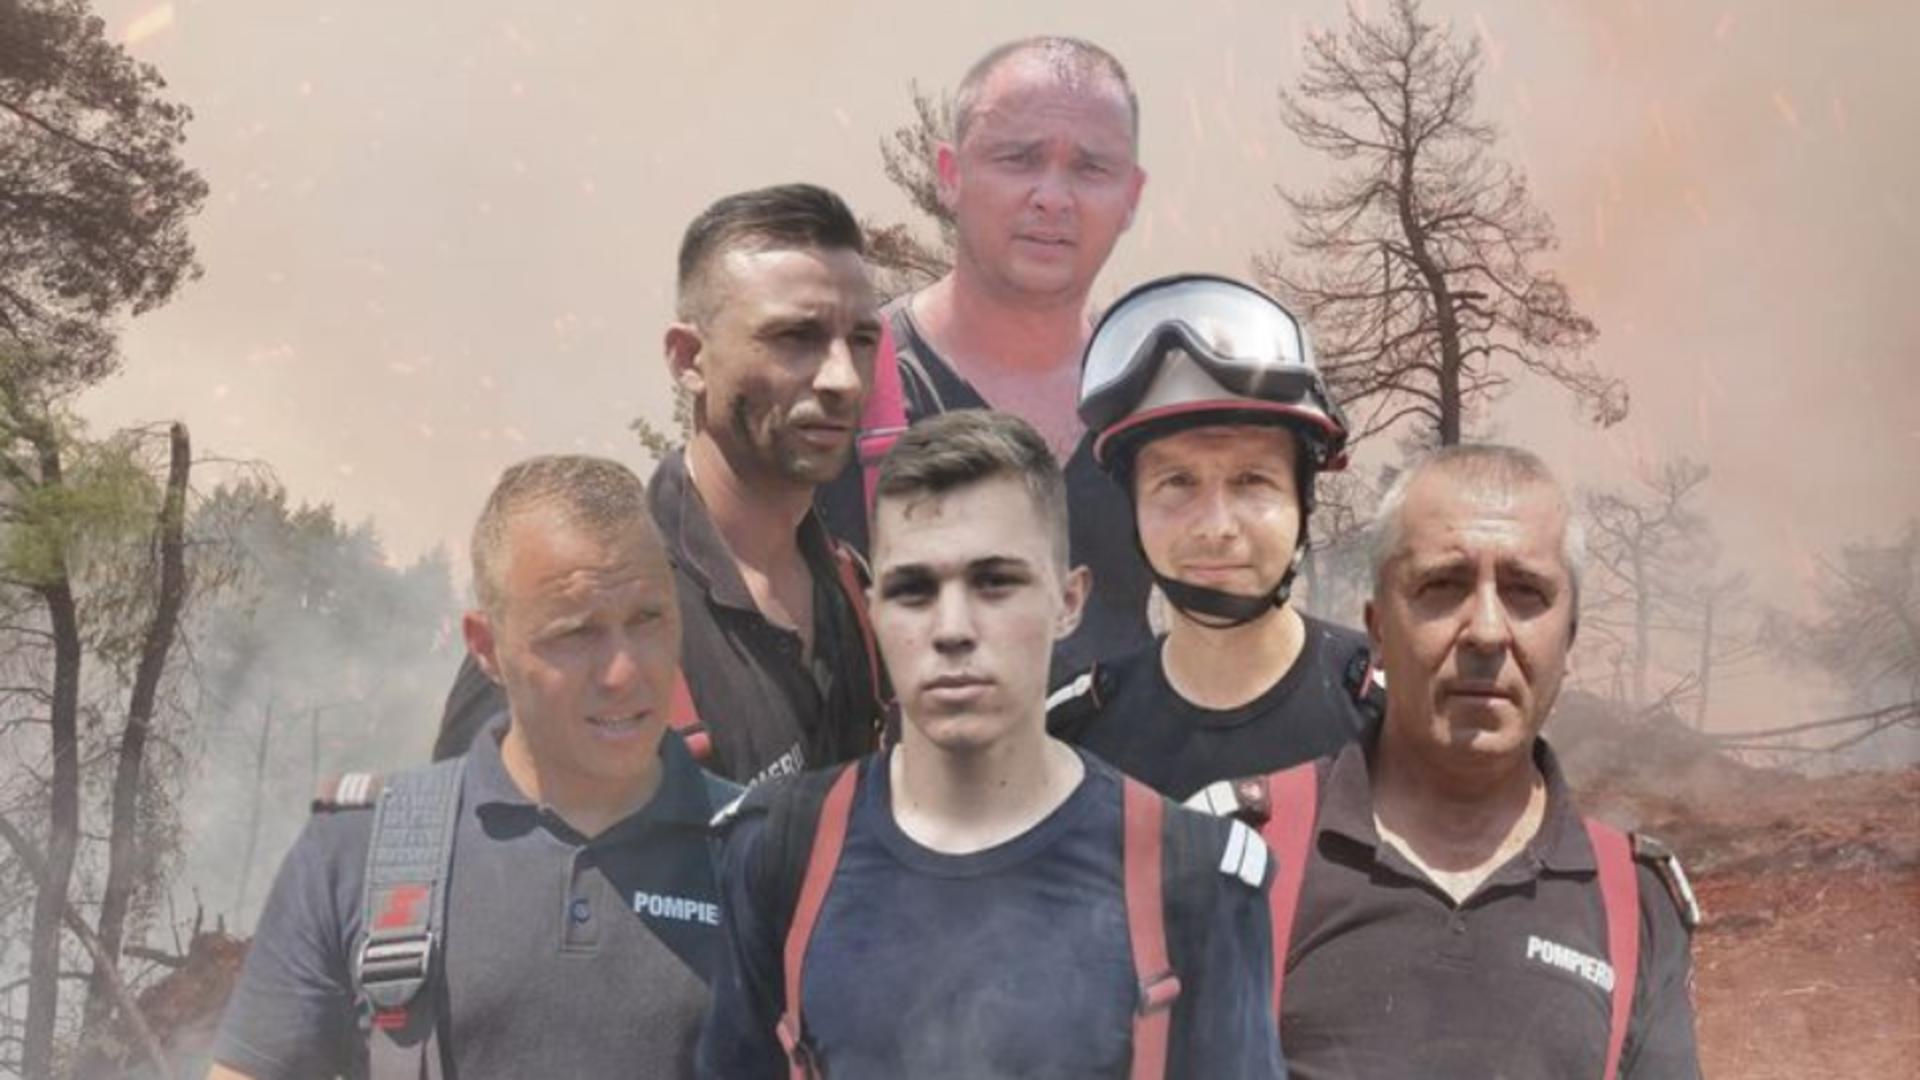 Pompierii români sting incendiile din Grecia Foto: Facebook.com